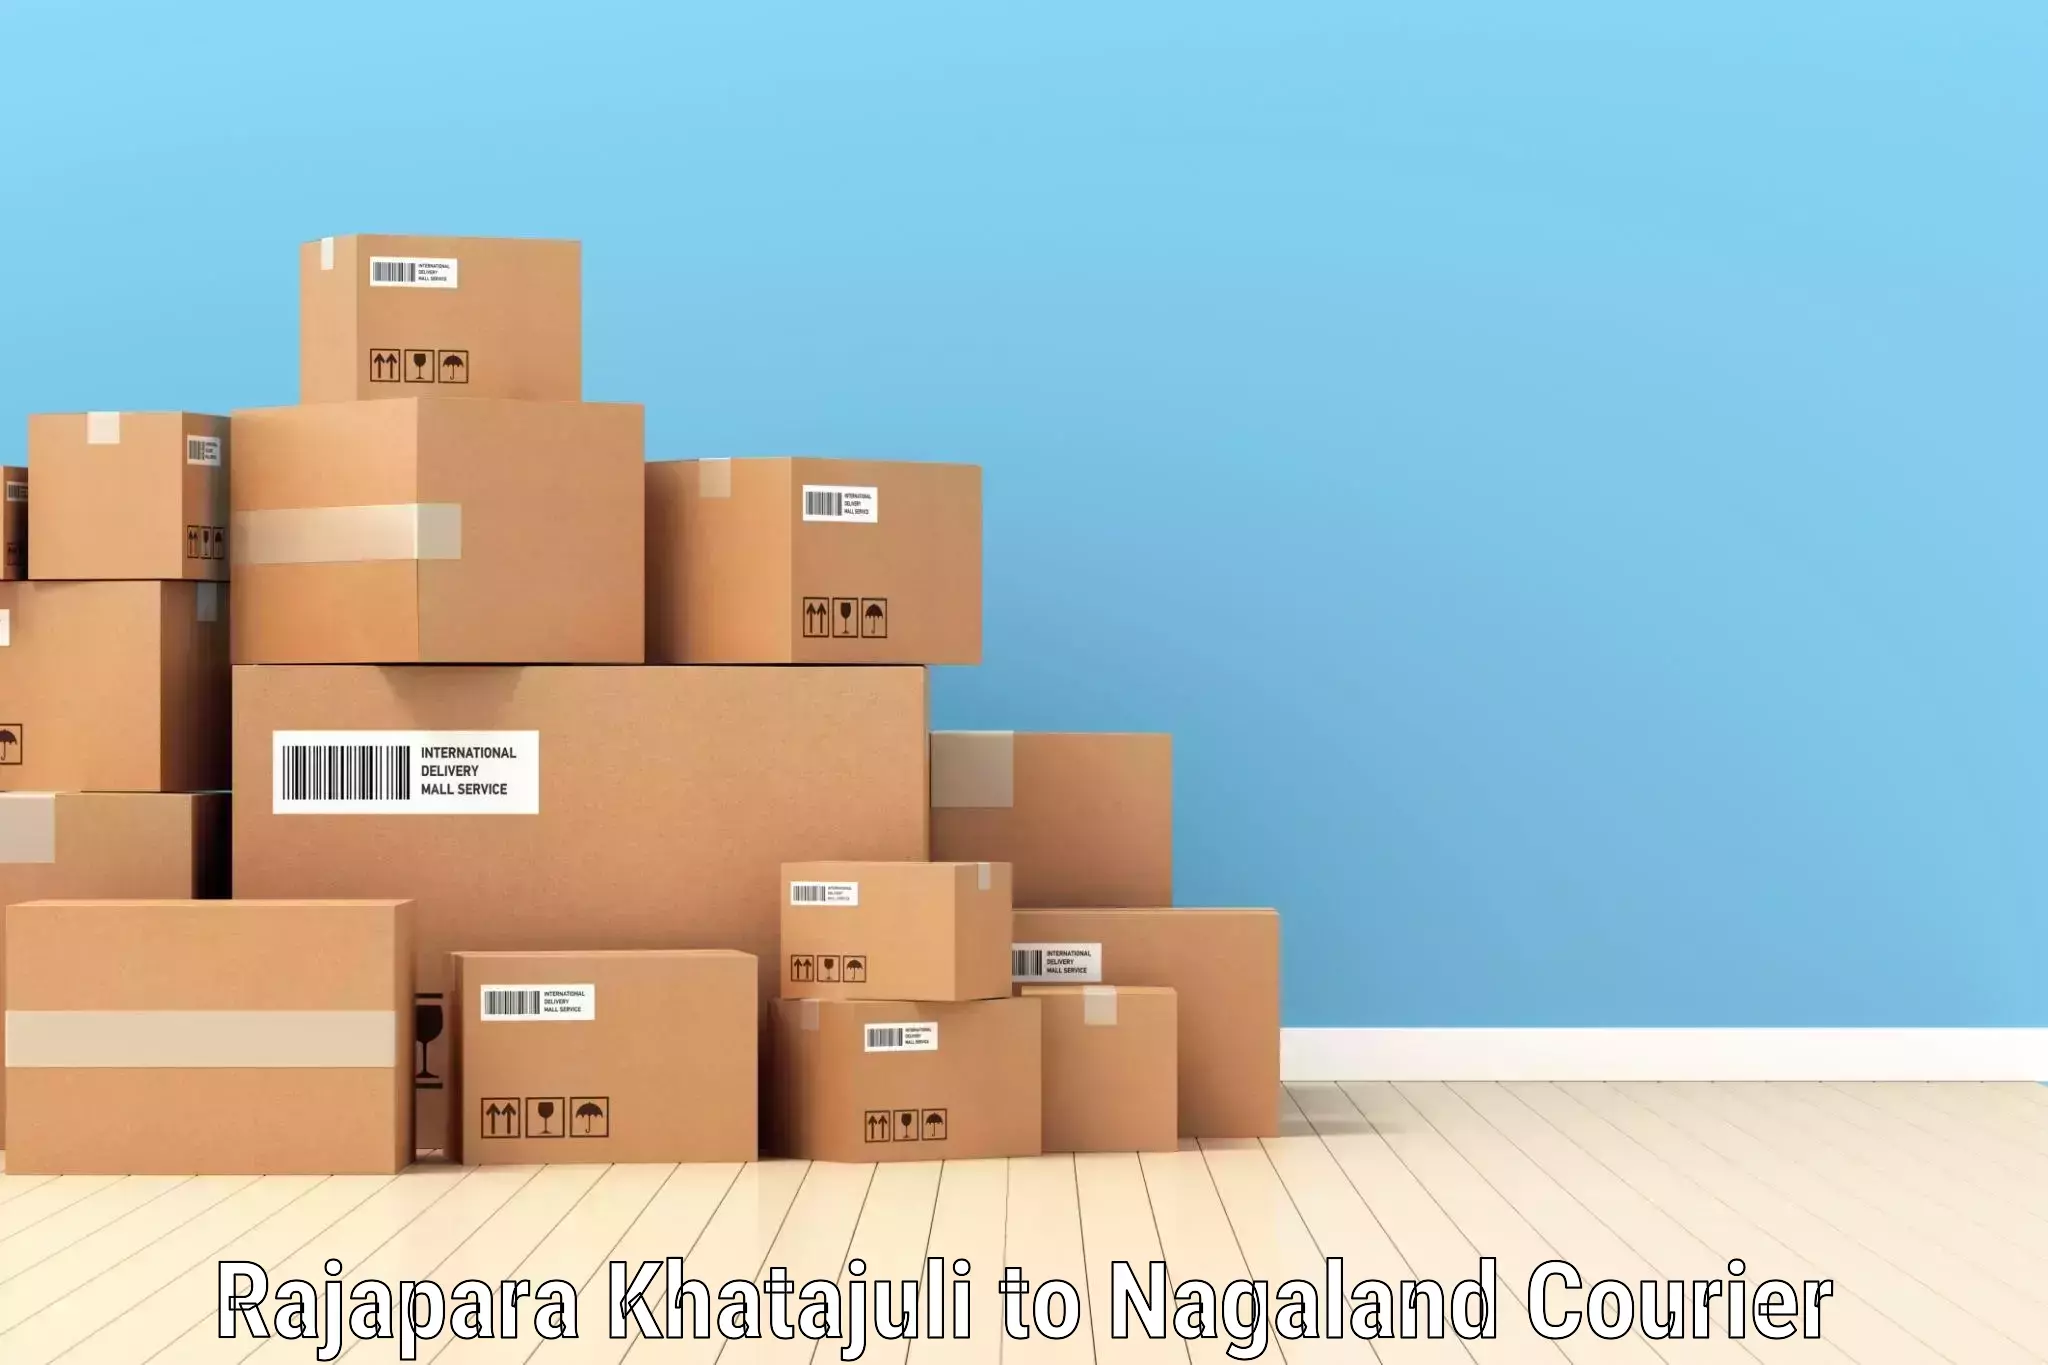 Express courier capabilities Rajapara Khatajuli to NIT Nagaland